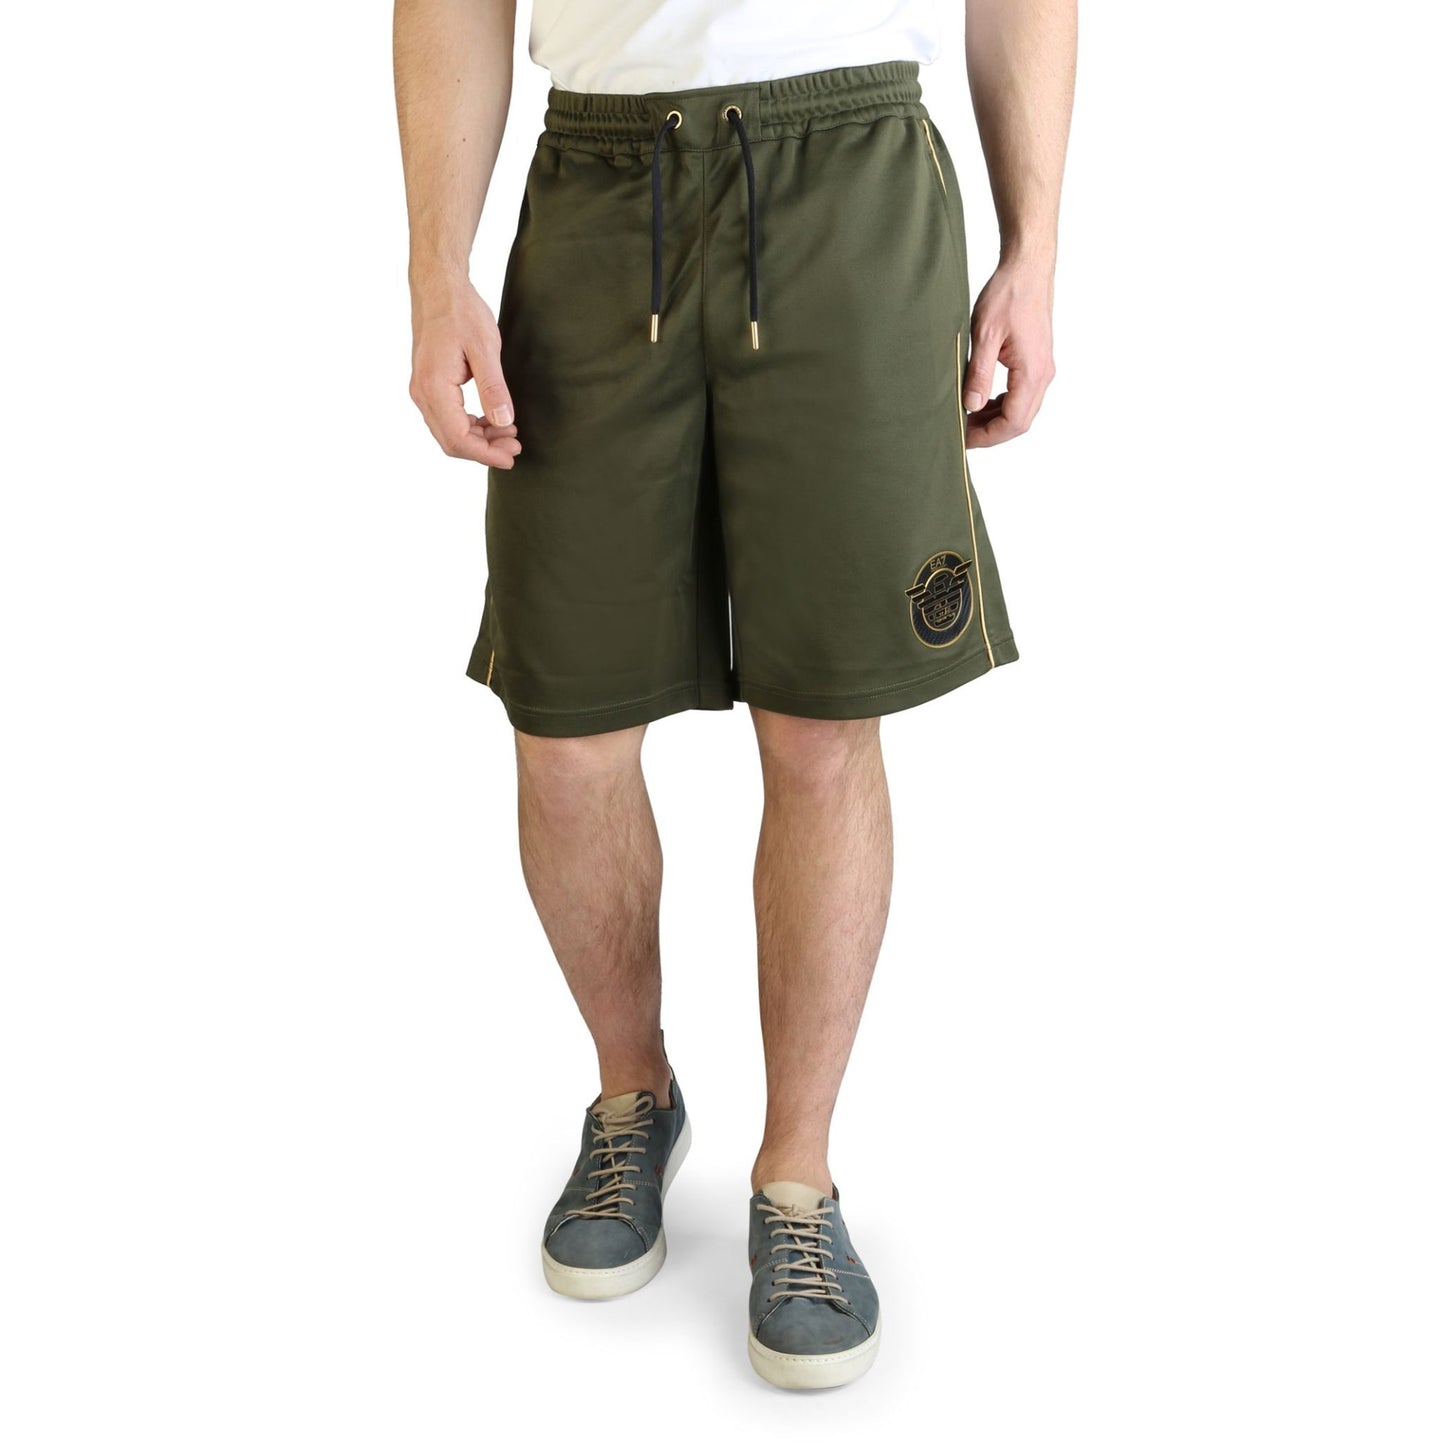 EA7 Man Shorts